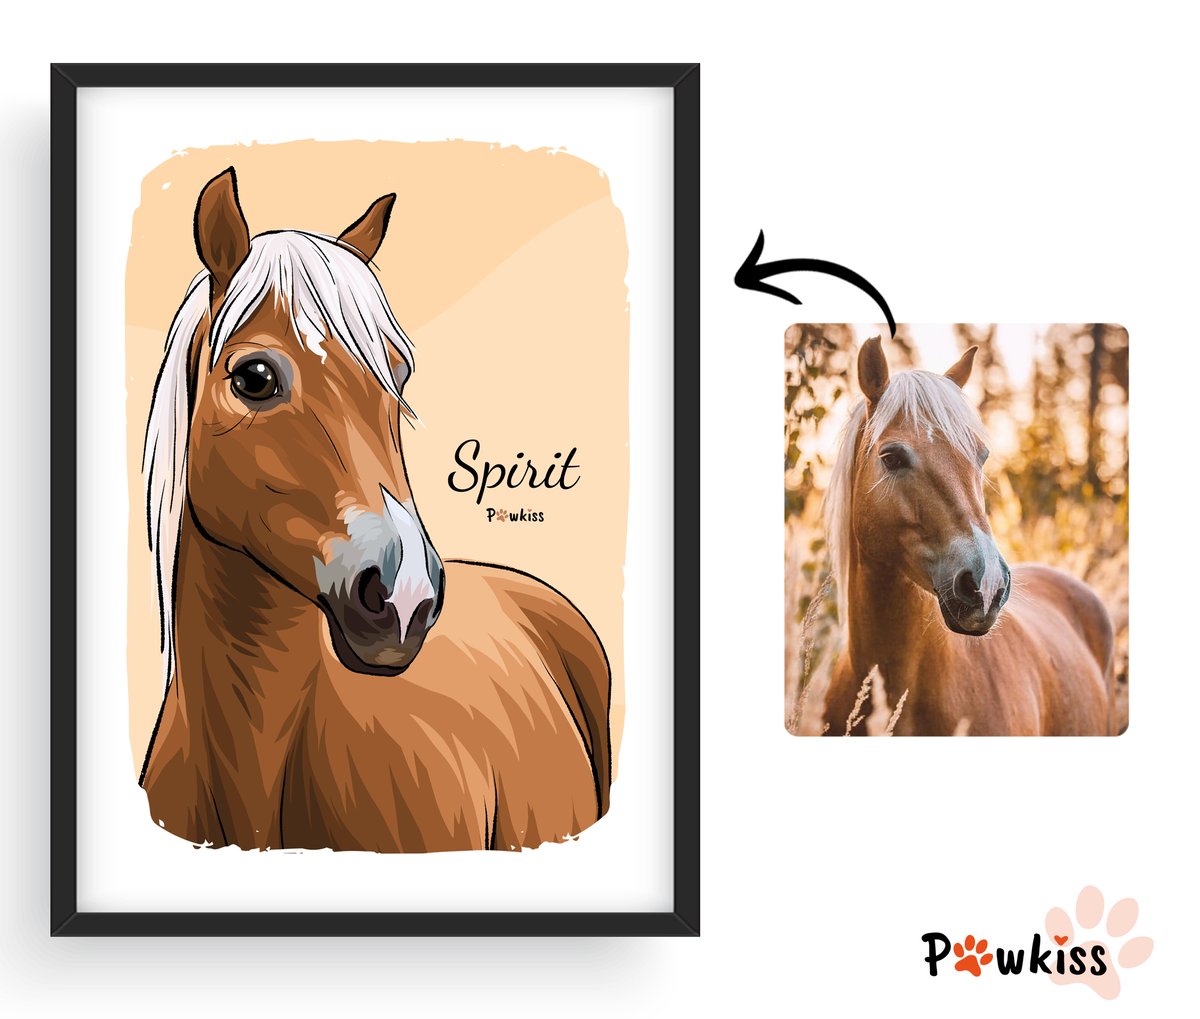 Horse portrait commission :))

#petportraits #digitalart #digitalpetportrait #artcommissions #horse